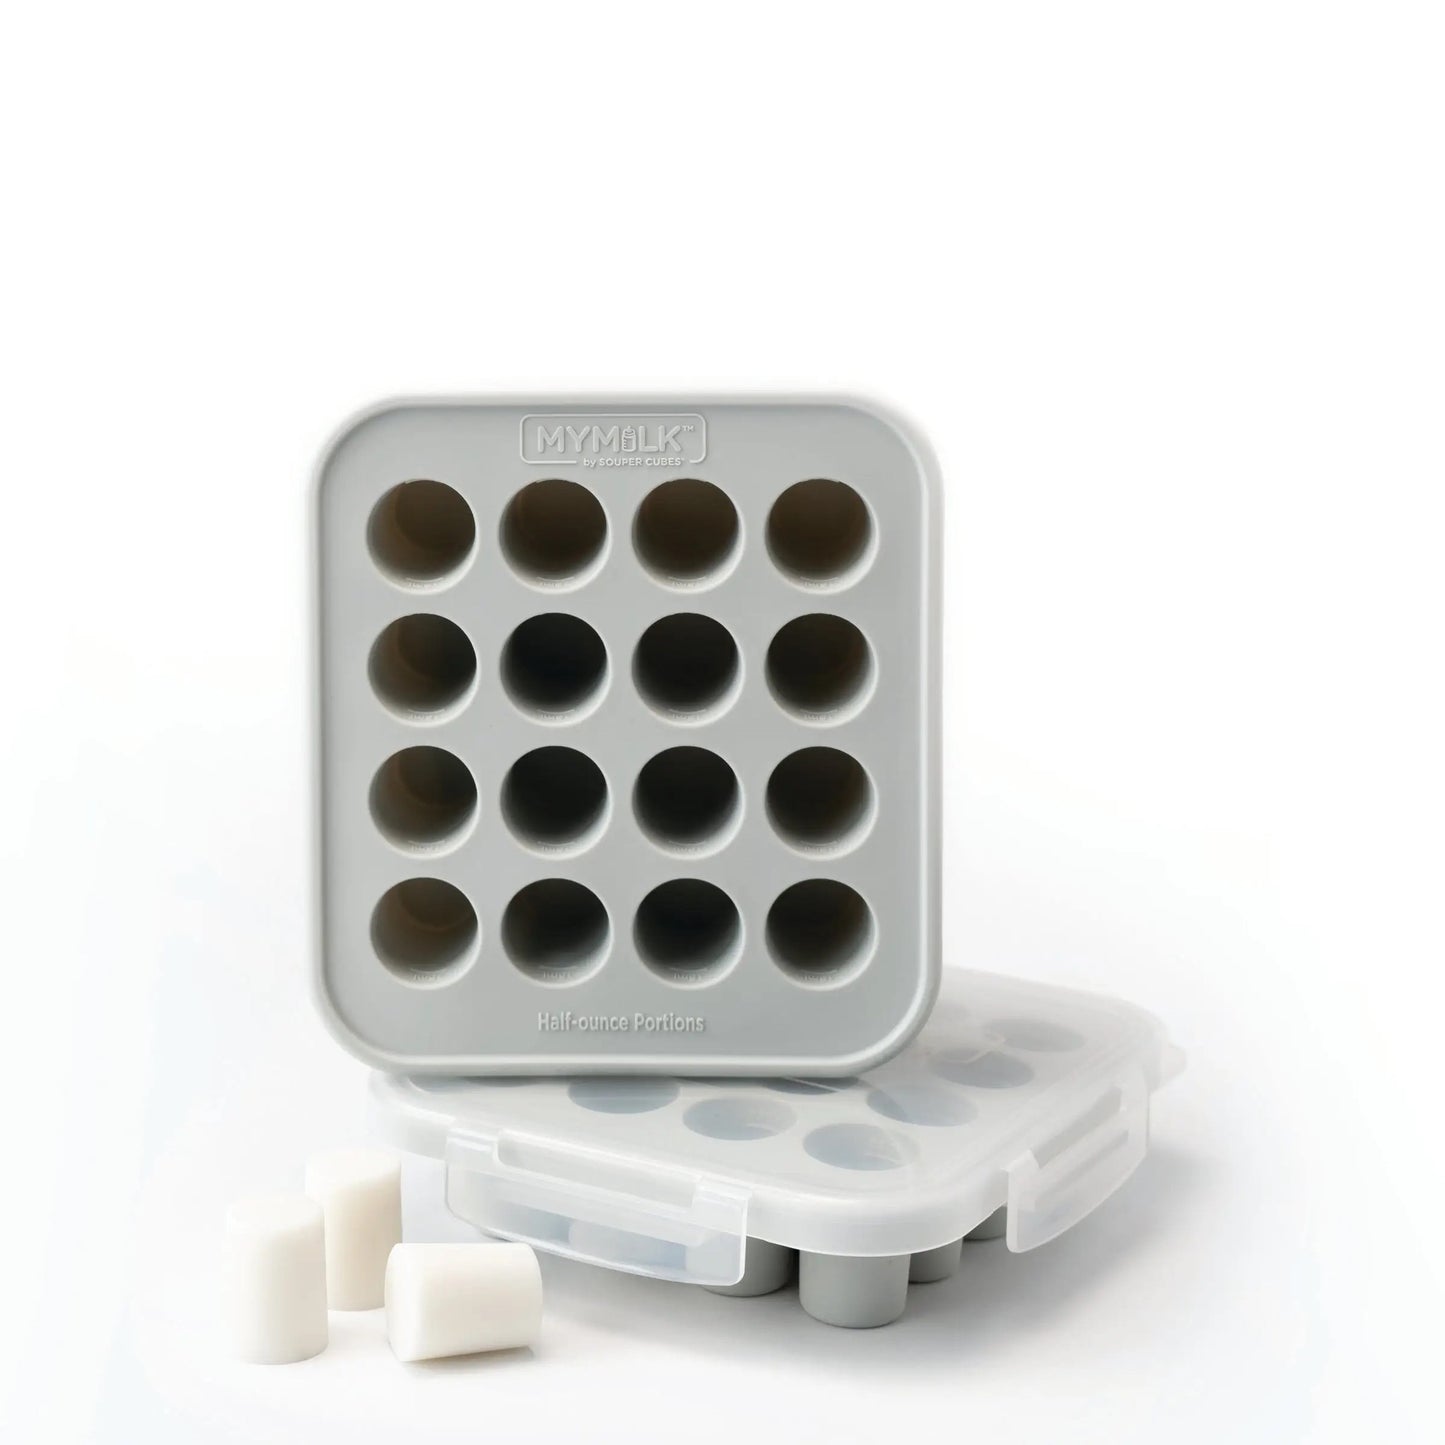 Souper Cubes 1/2 Cup Freezing Tray, Aqua